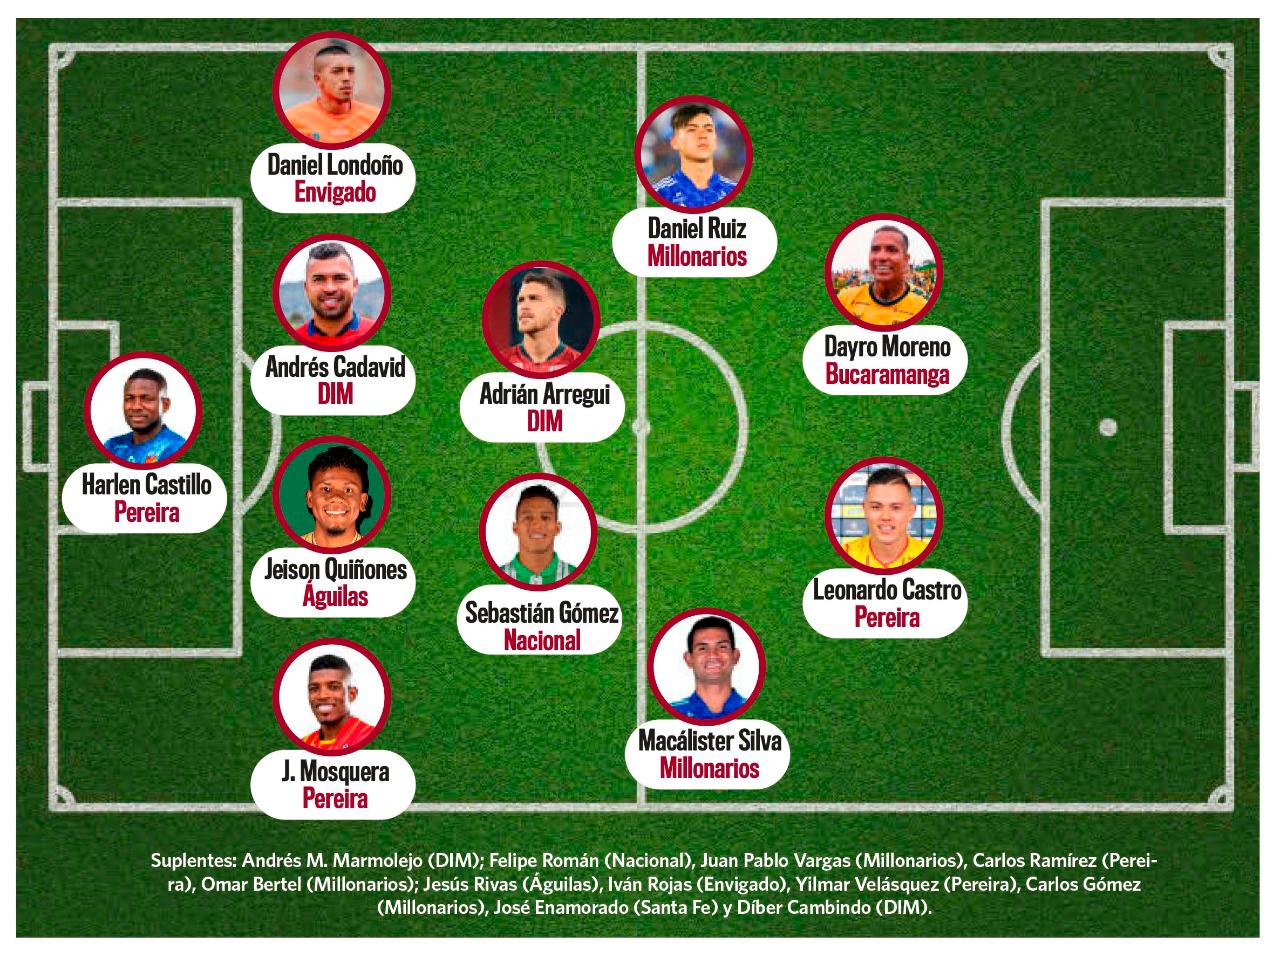 Este es nuestro Equipo Ideal del fútbol colombiano en el segundo semestre de 2022